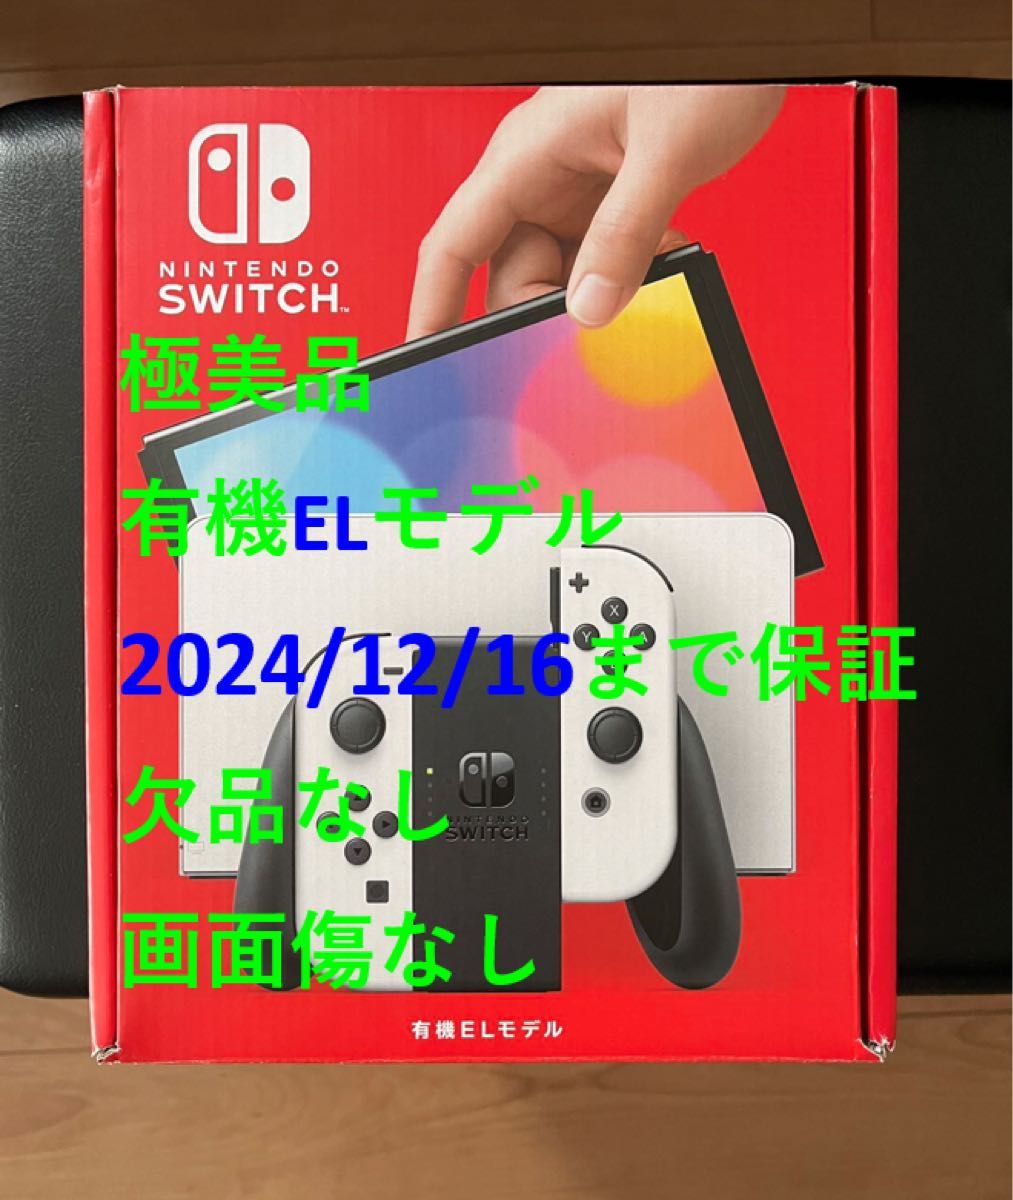 有機ELモデル Nintendo Switch ホワイト 2024/12/16まで保証あり